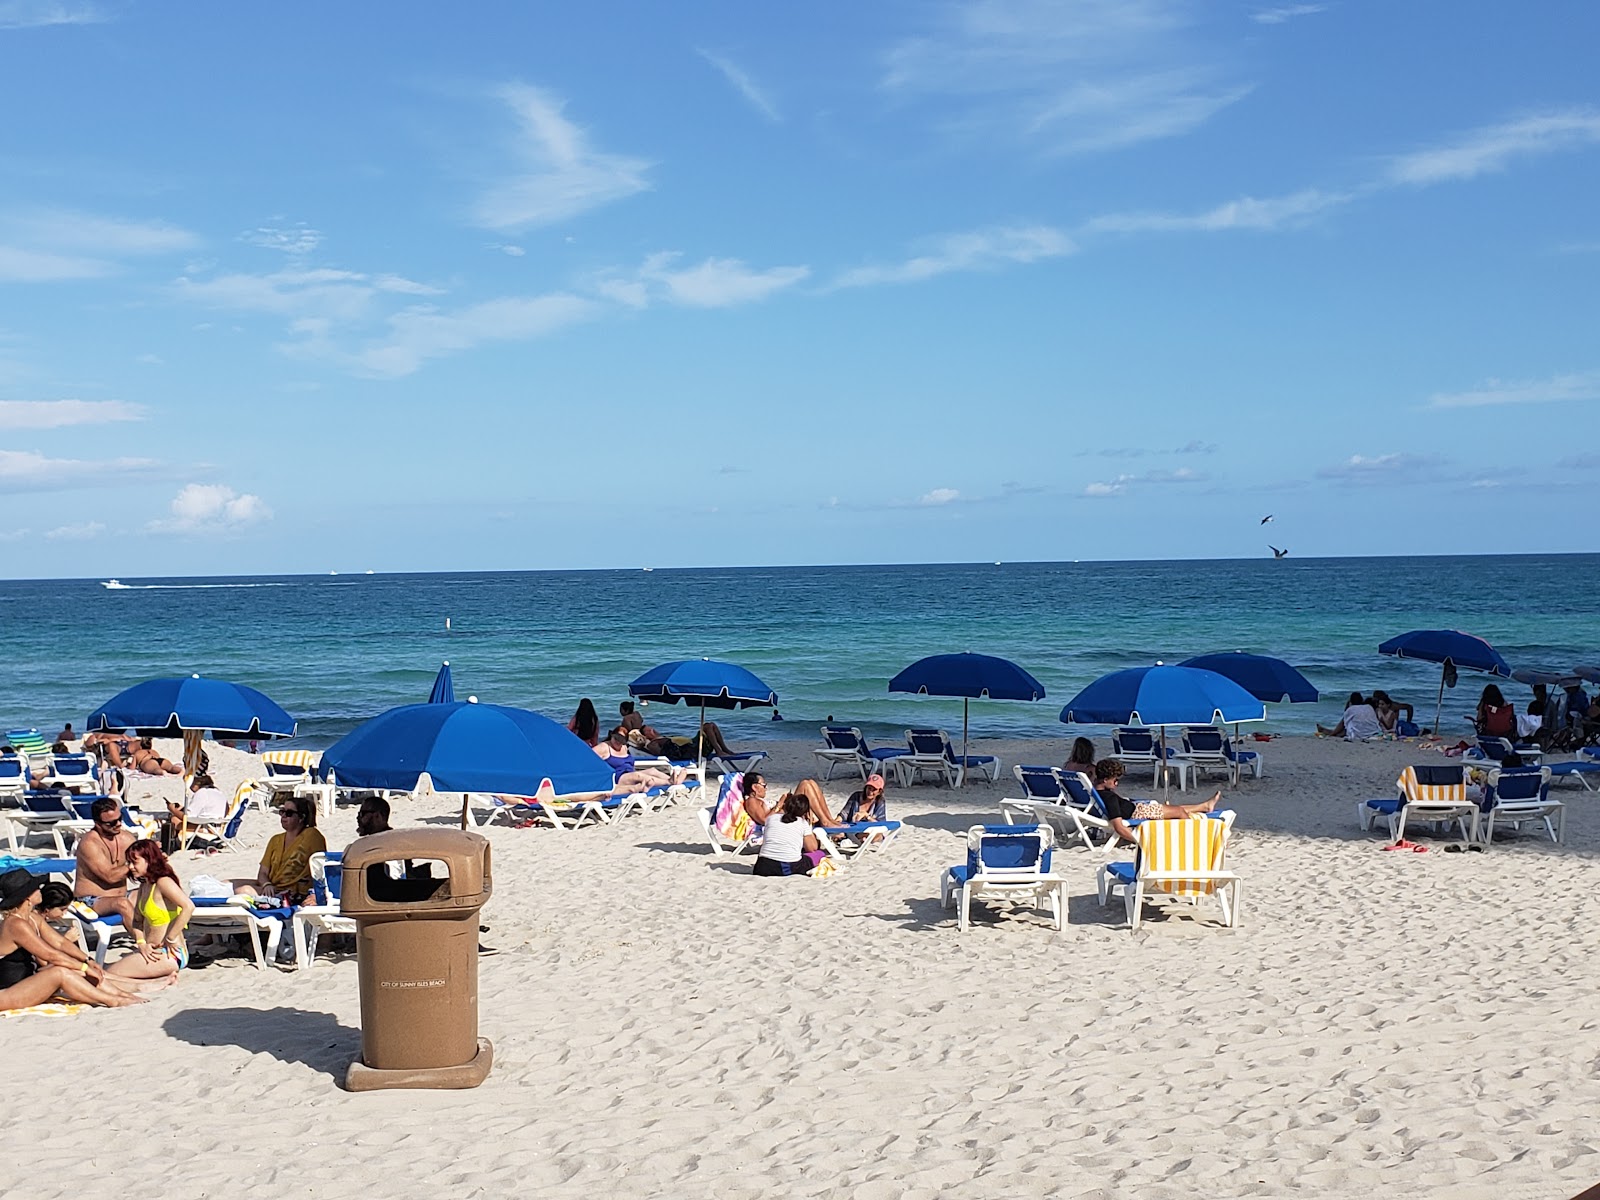 阳光岛海滩的照片 - 受到放松专家欢迎的热门地点